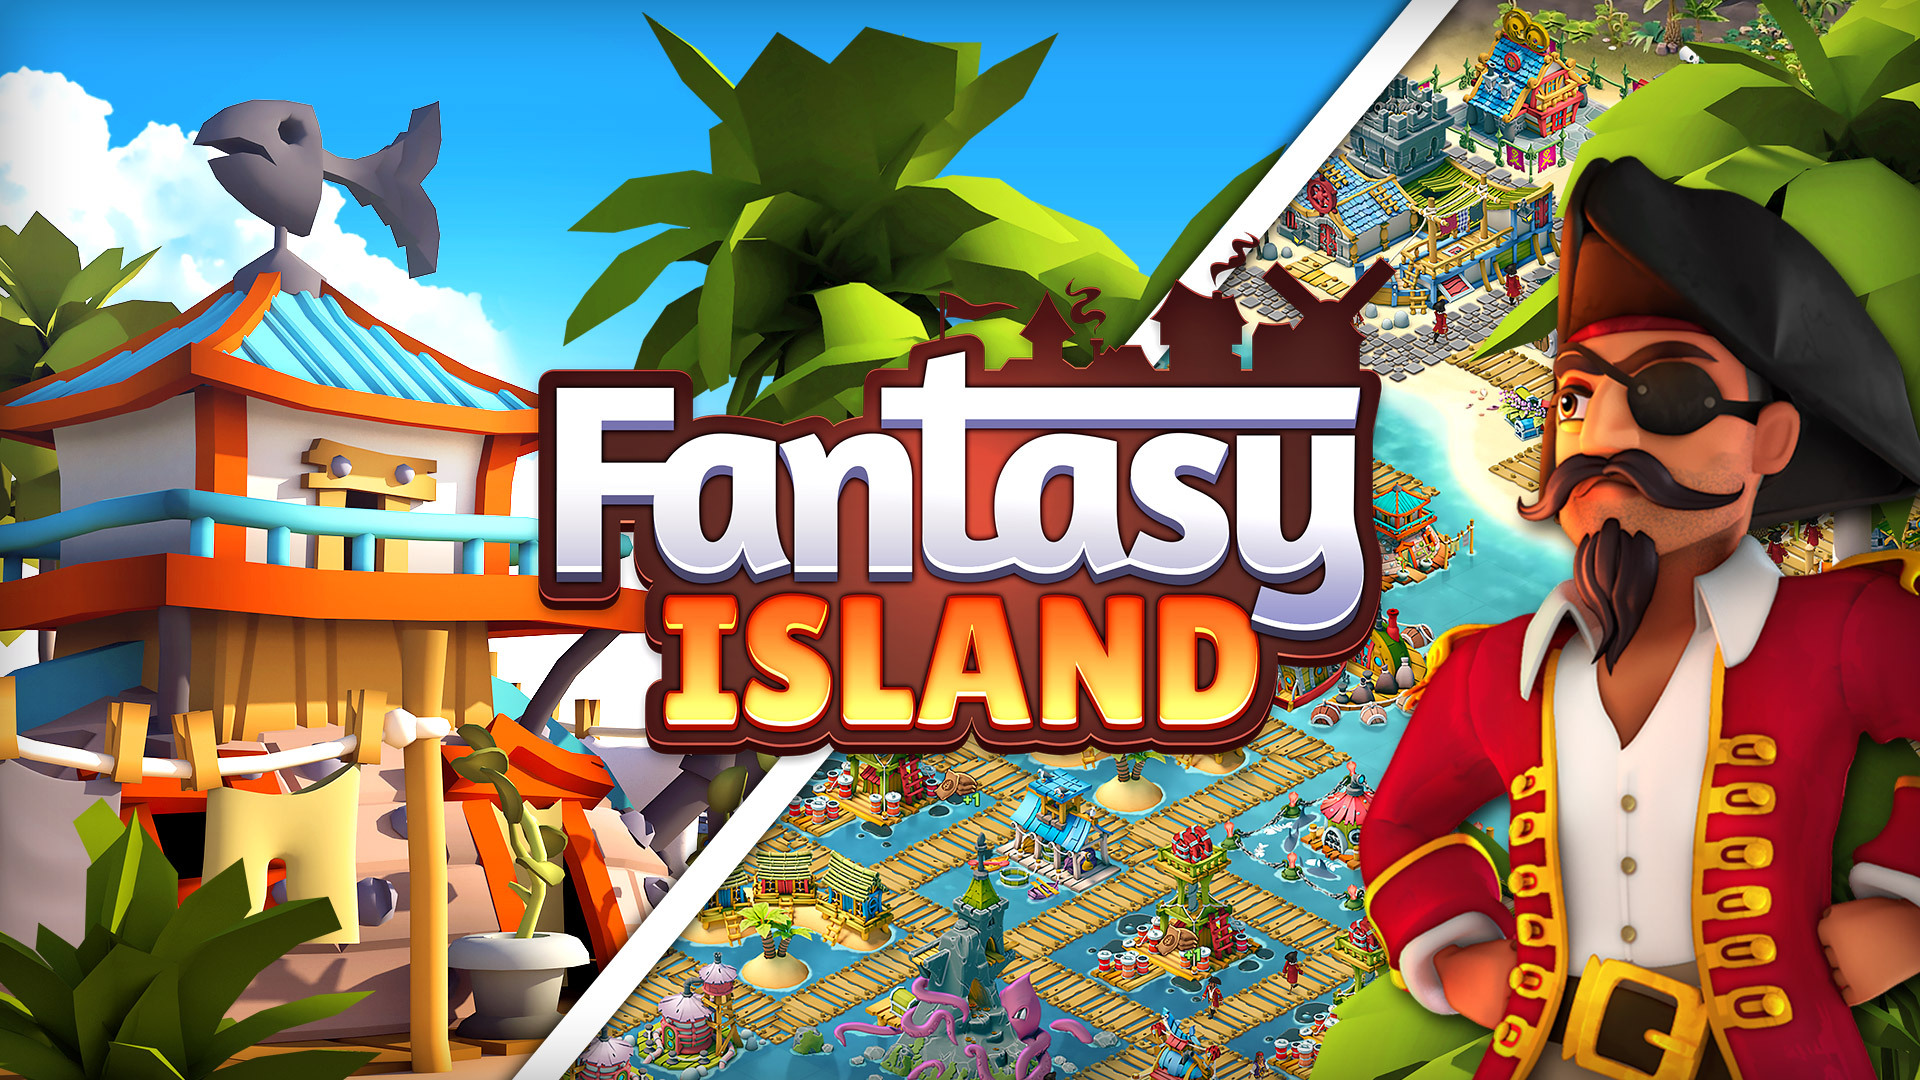 Fantasy Island Sim - Fun Forest Adventure